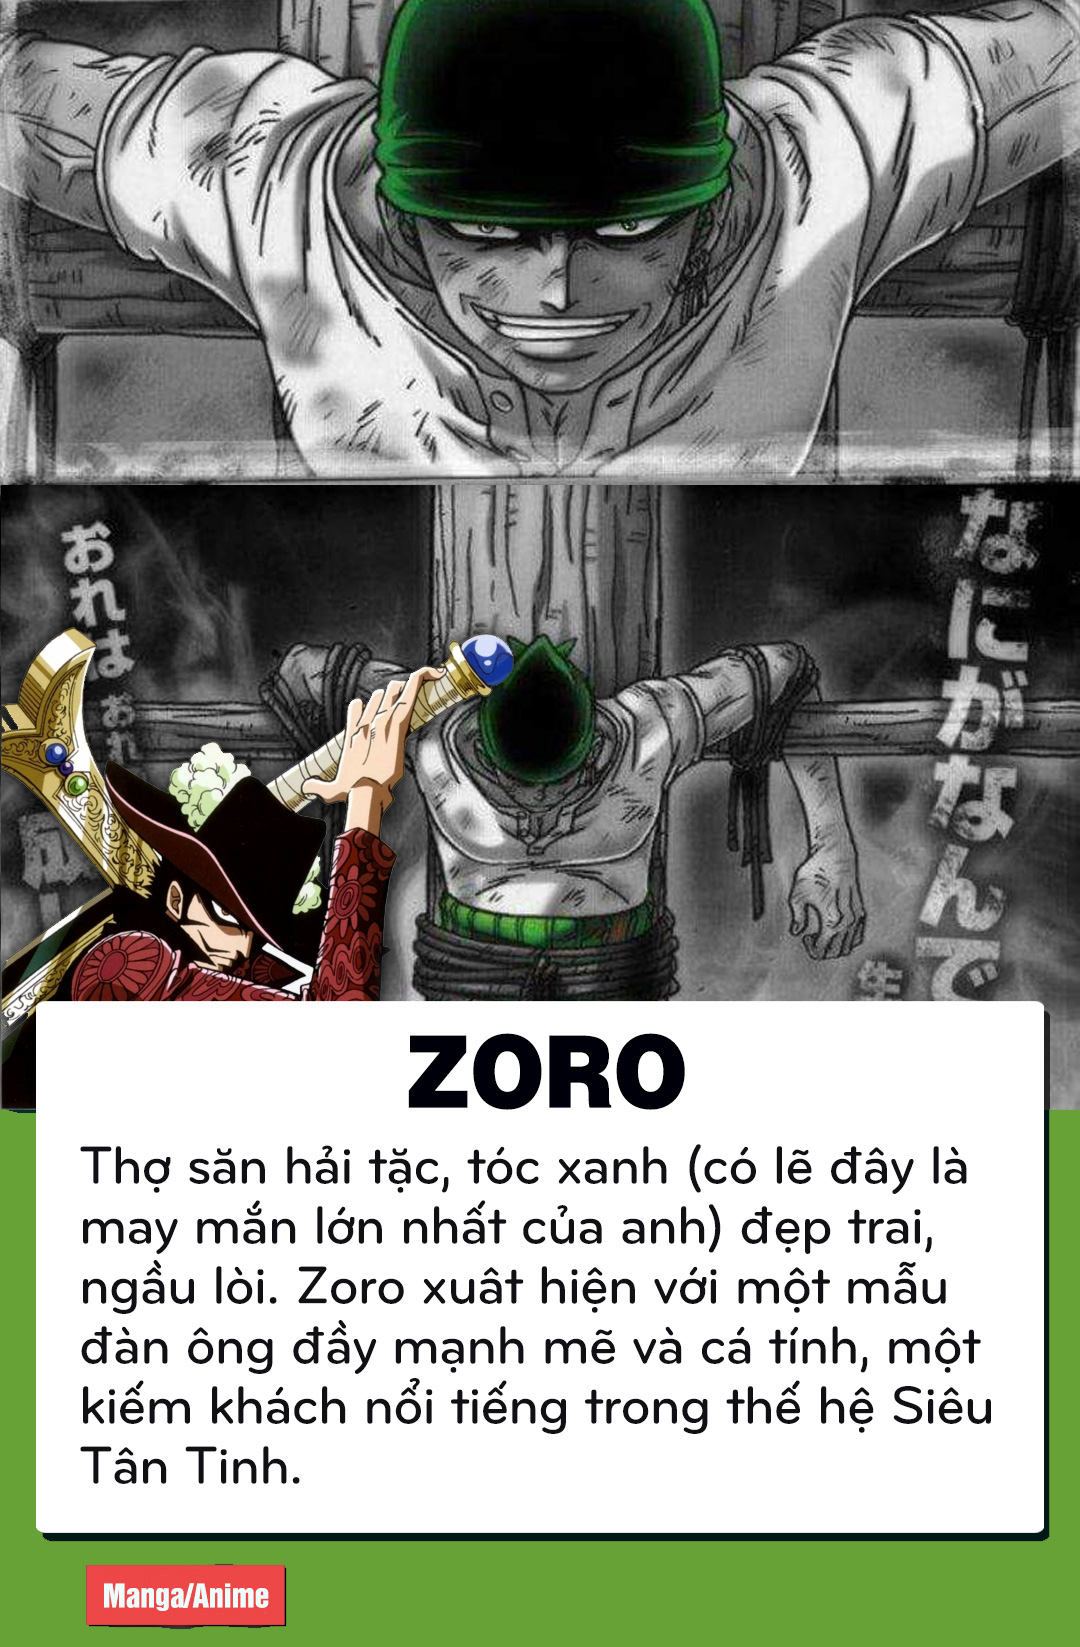 Tài tử đóng thợ săn hải tặc Zoro phim One Piece đang gây sốt vì như xé  truyện bước ra đời thực